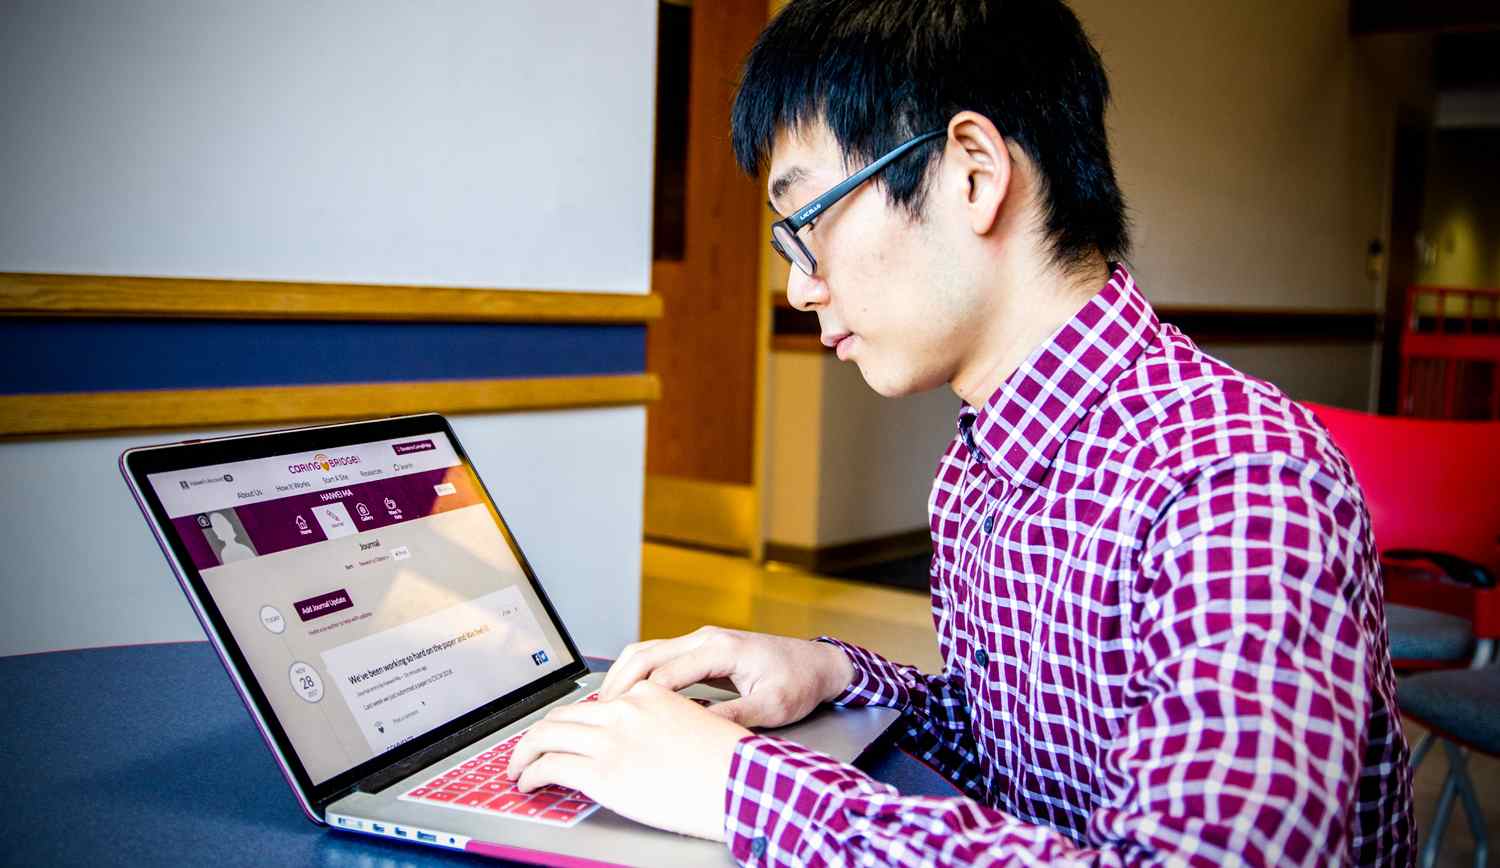 Asian man looking at a computer screen